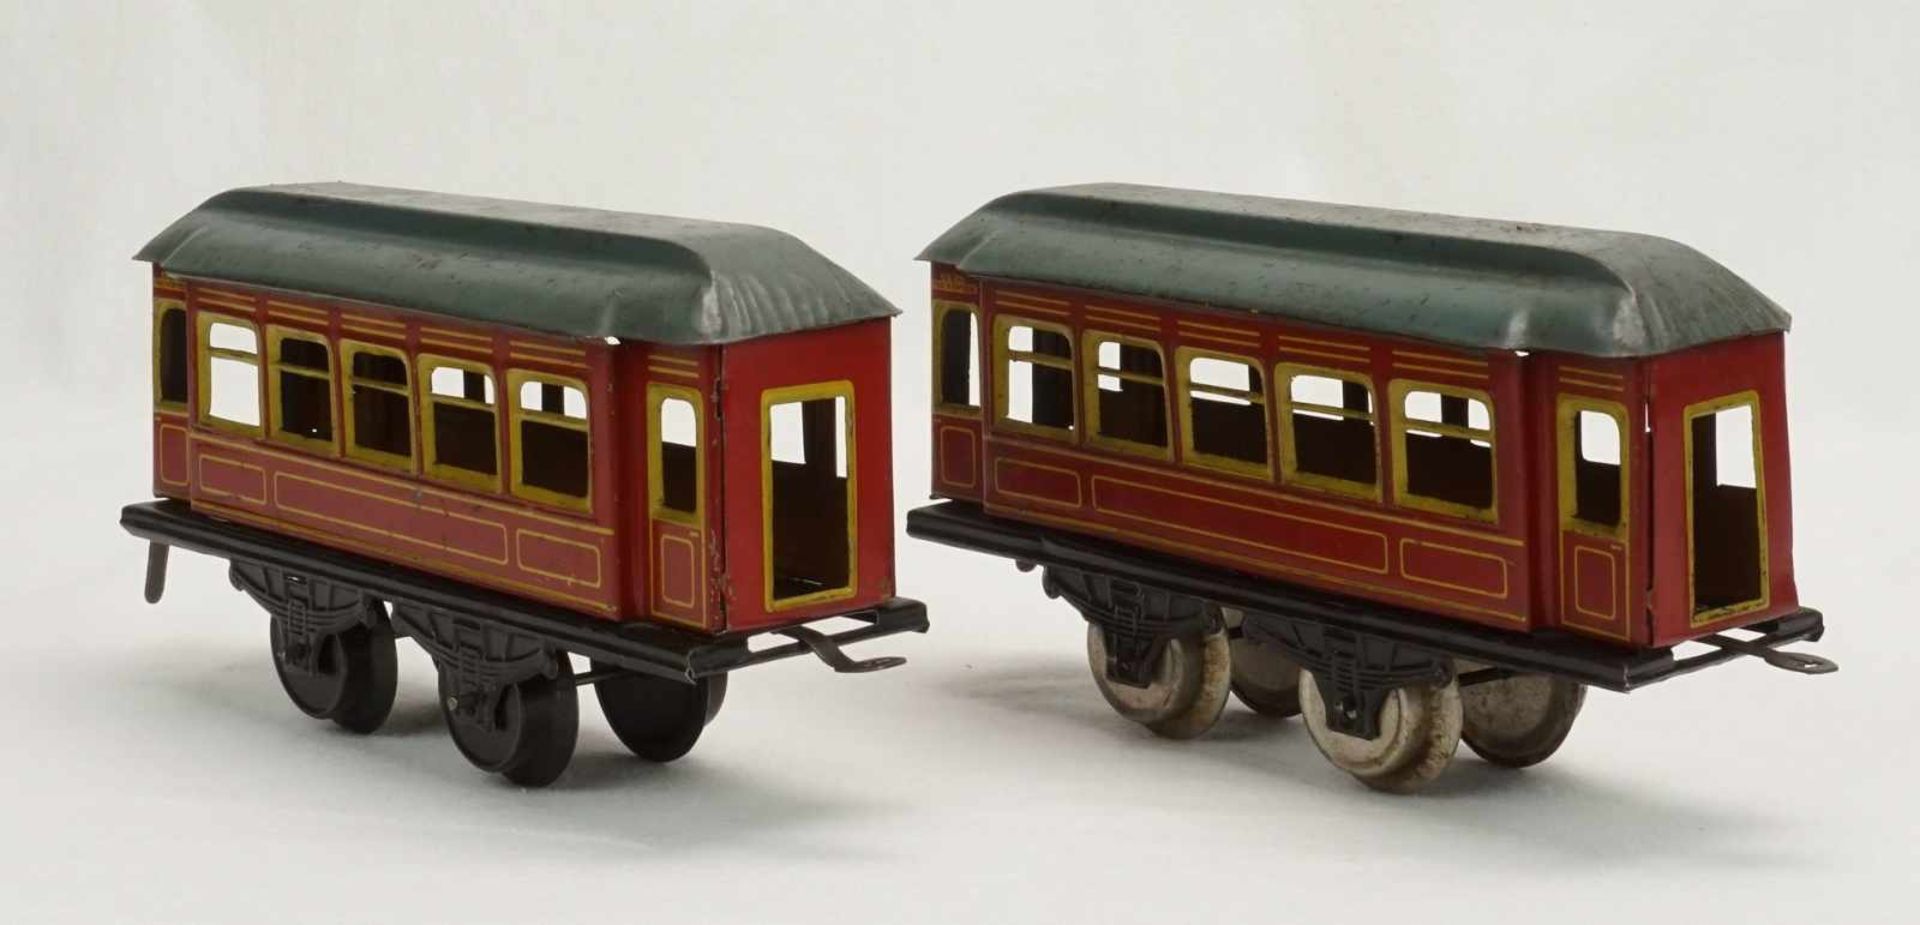 Drei Karl Bub Nürnberg Personenwagen, Spur 0, um 1920Blech lithografiert, zwei rote und ein blauer - Image 2 of 5